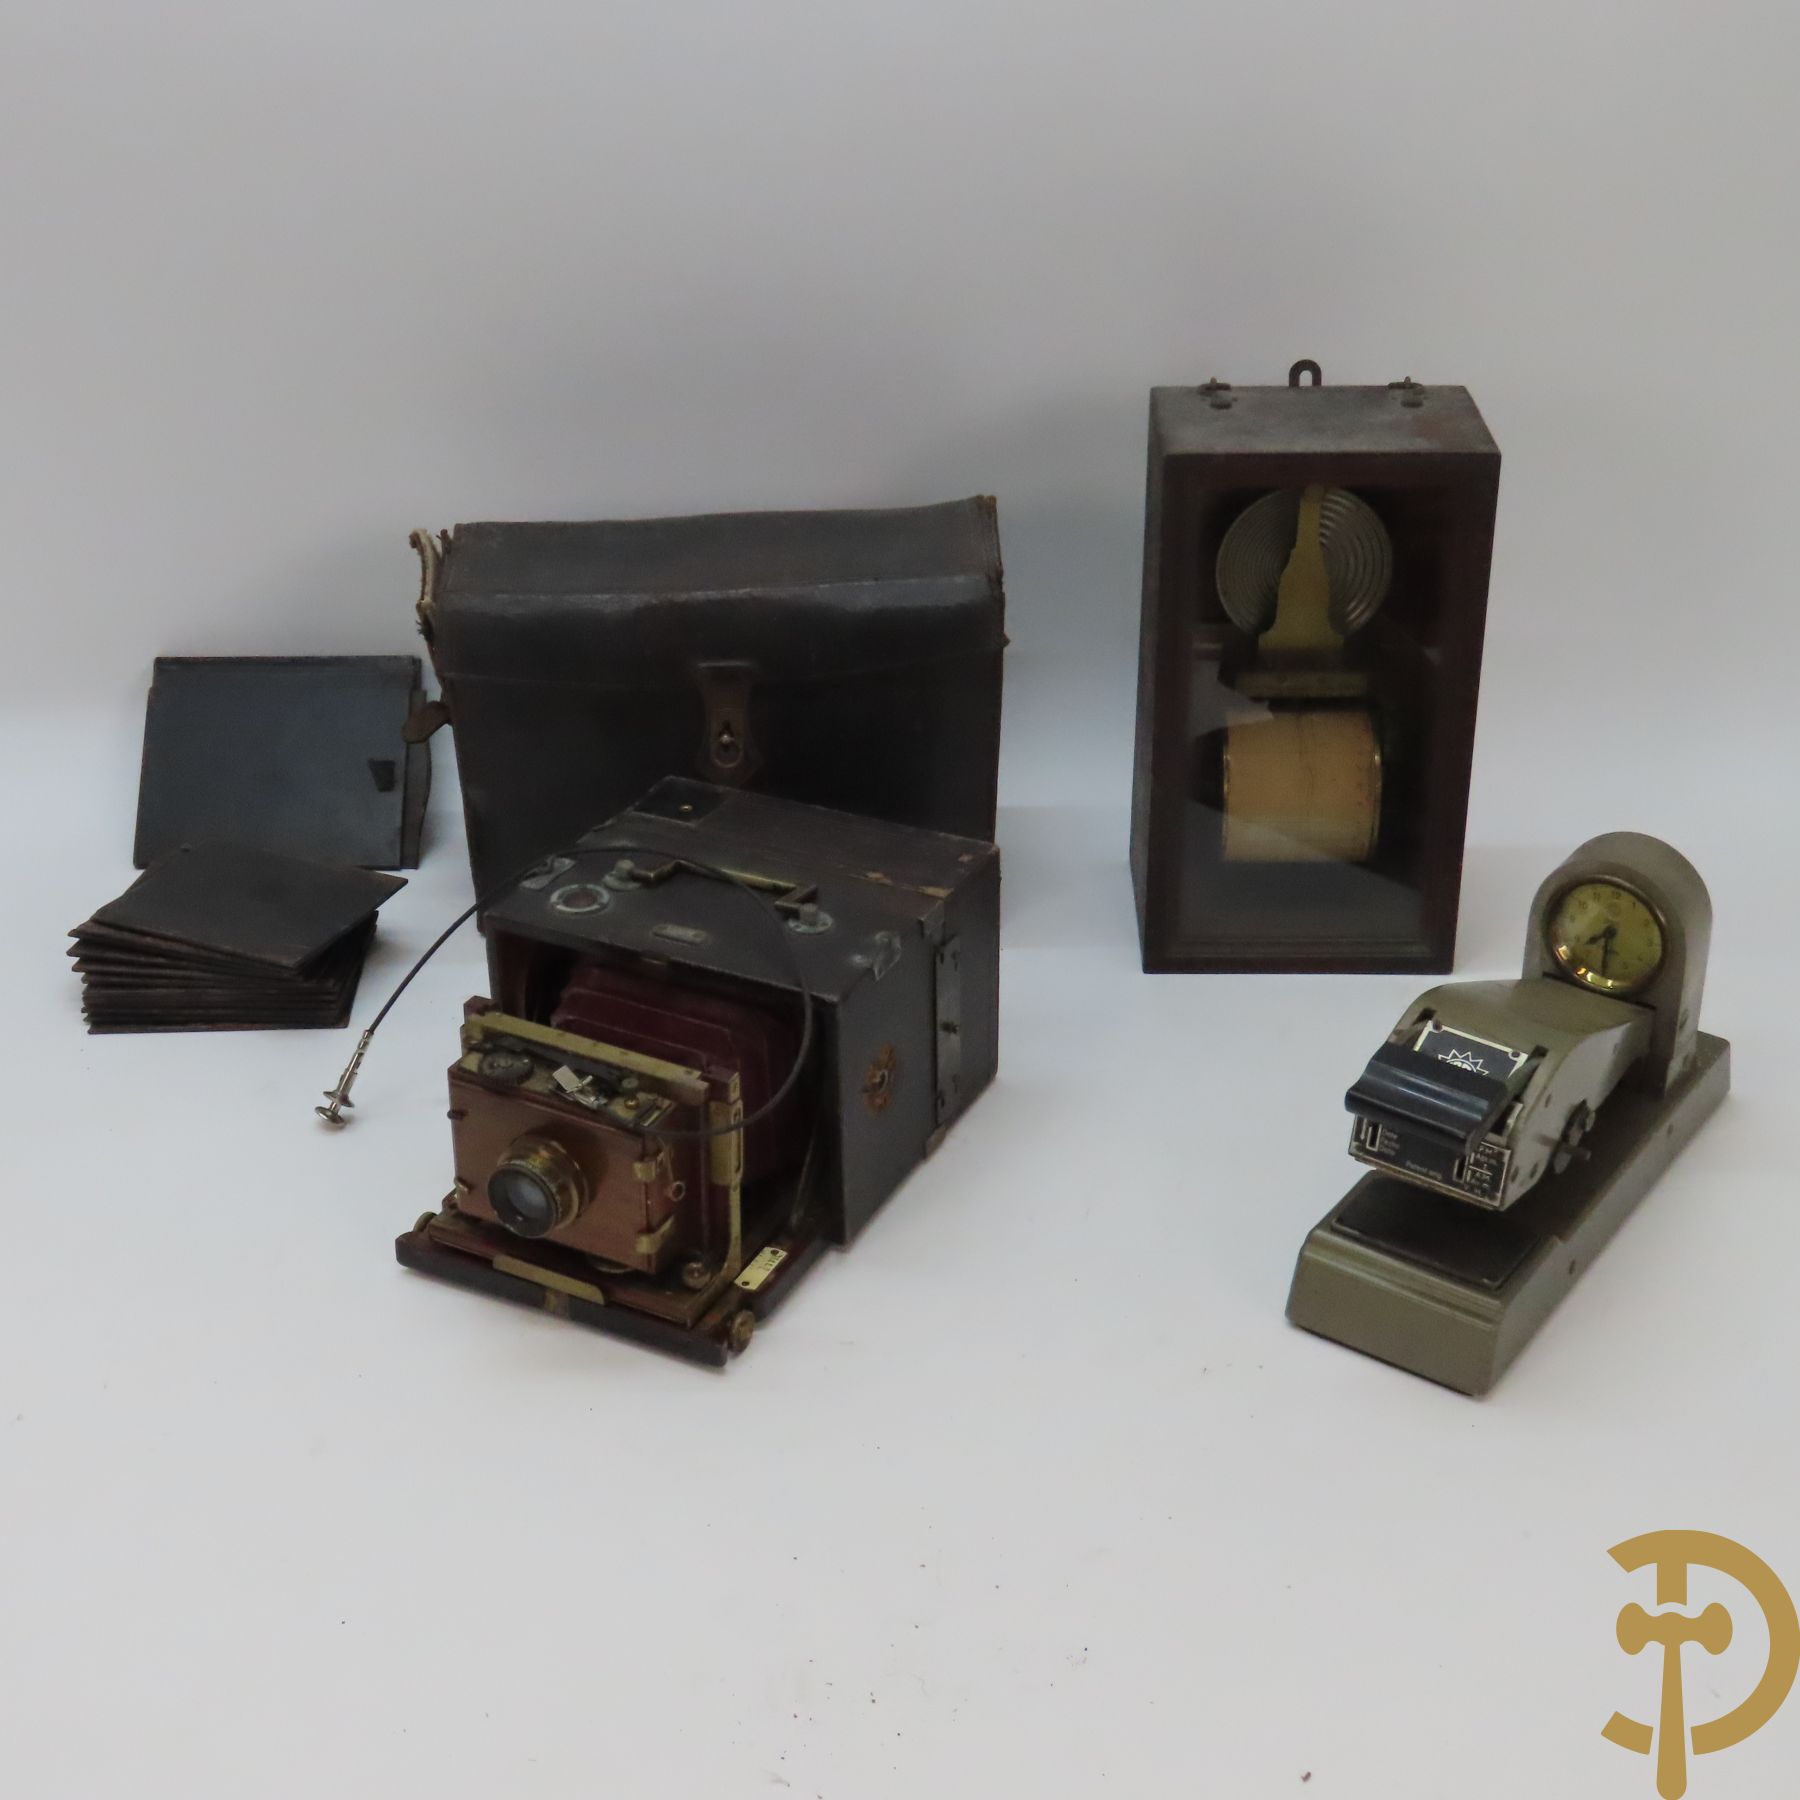 Barograaf in houten kist + oude uitschuifbare kodak in kist + stempelmachine met uurwerk, Erfo